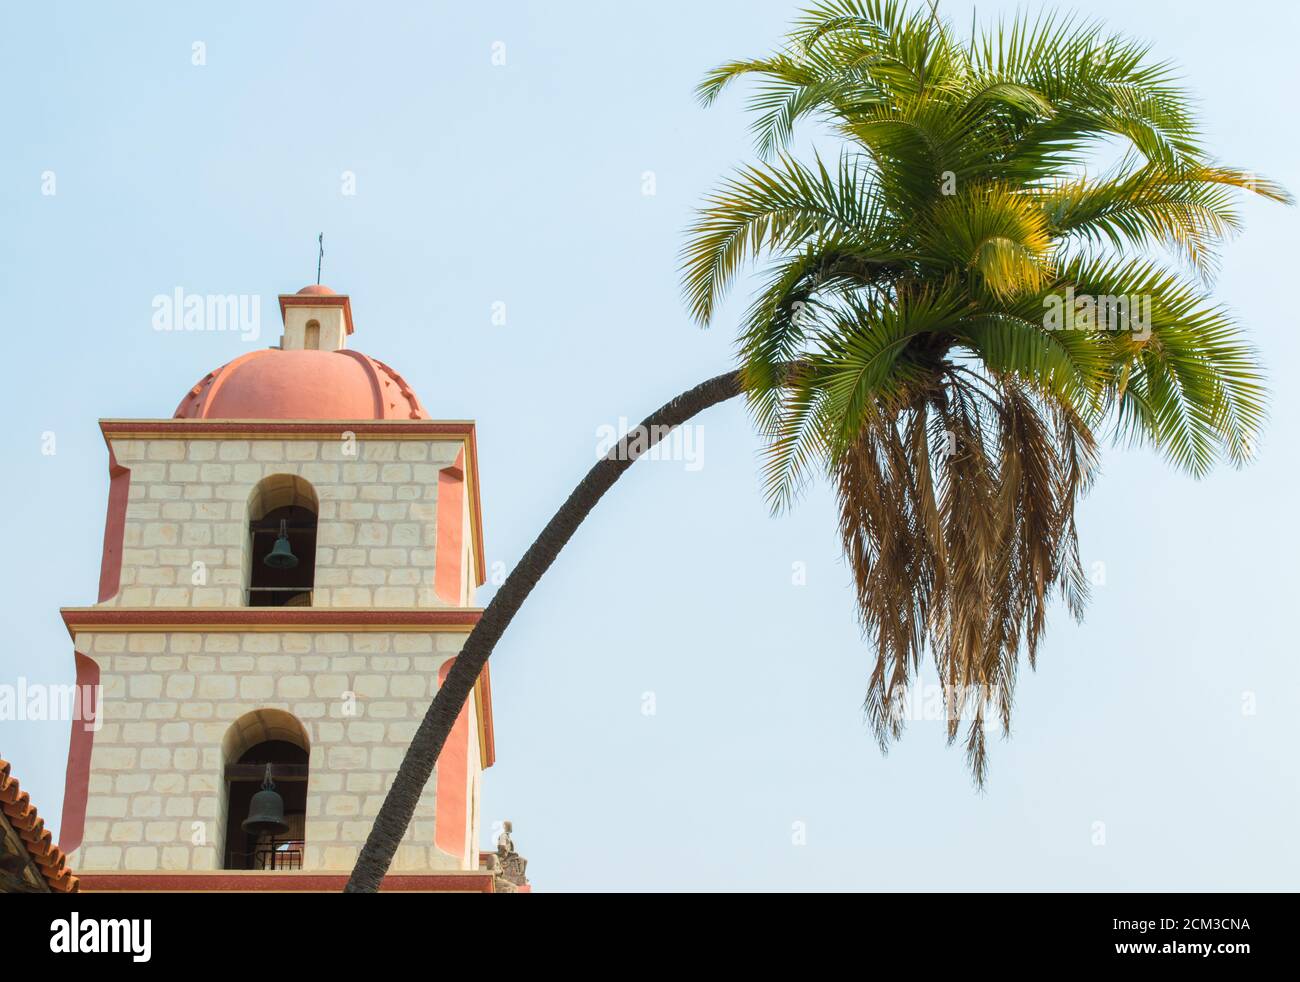 Un palmier élégant et curving devant le clocher de style espagnol à la mission historique de Santa Barbara en Californie sous un soleil brumeux Banque D'Images